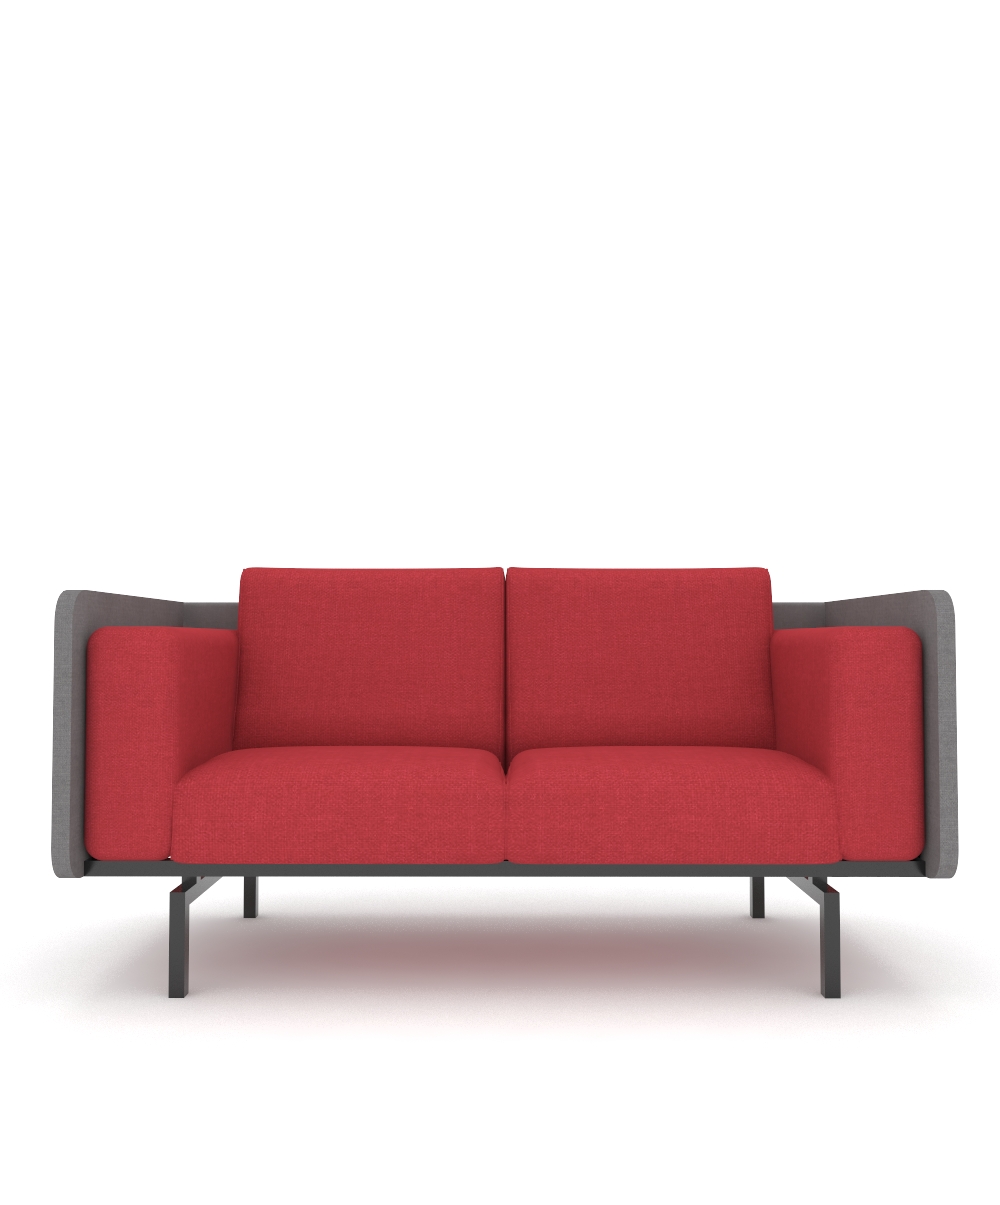 Quattro classic Sofa